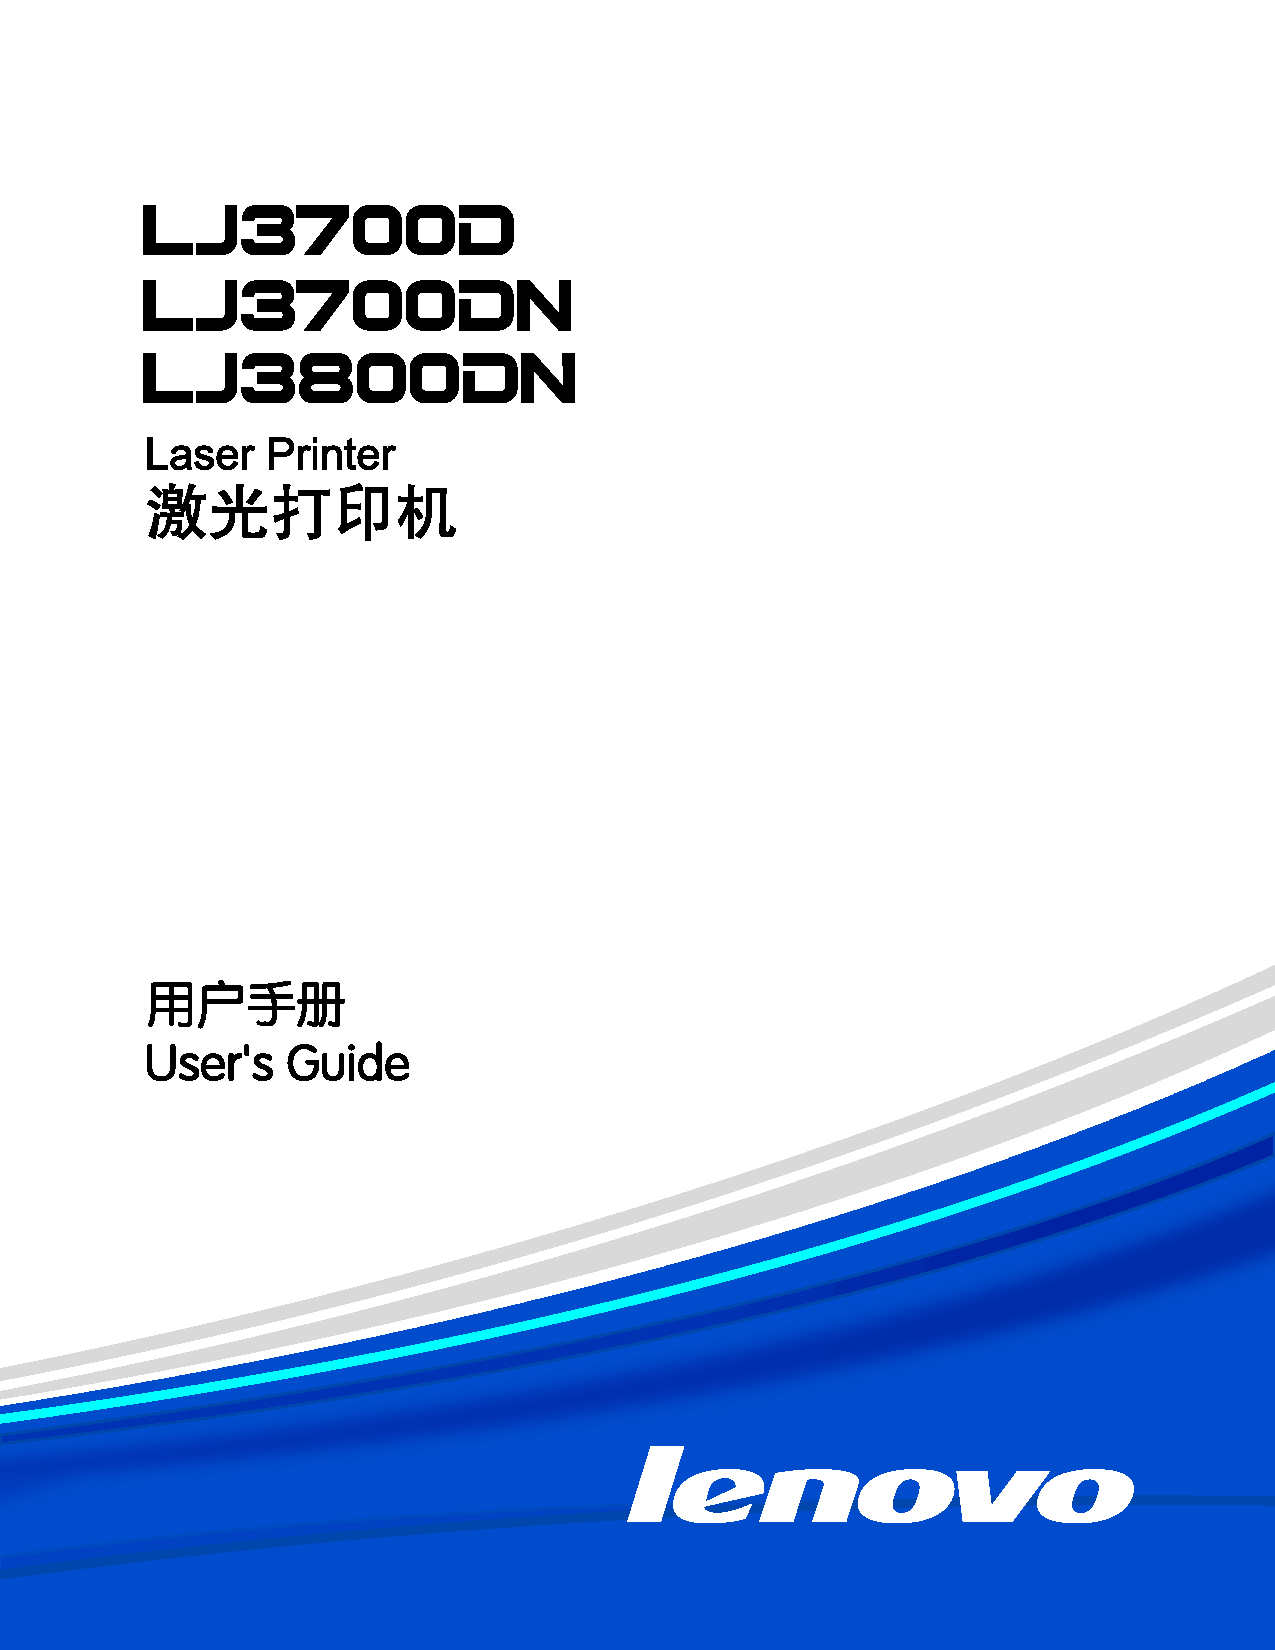 联想 Lenovo LJ3700D 用户手册 封面